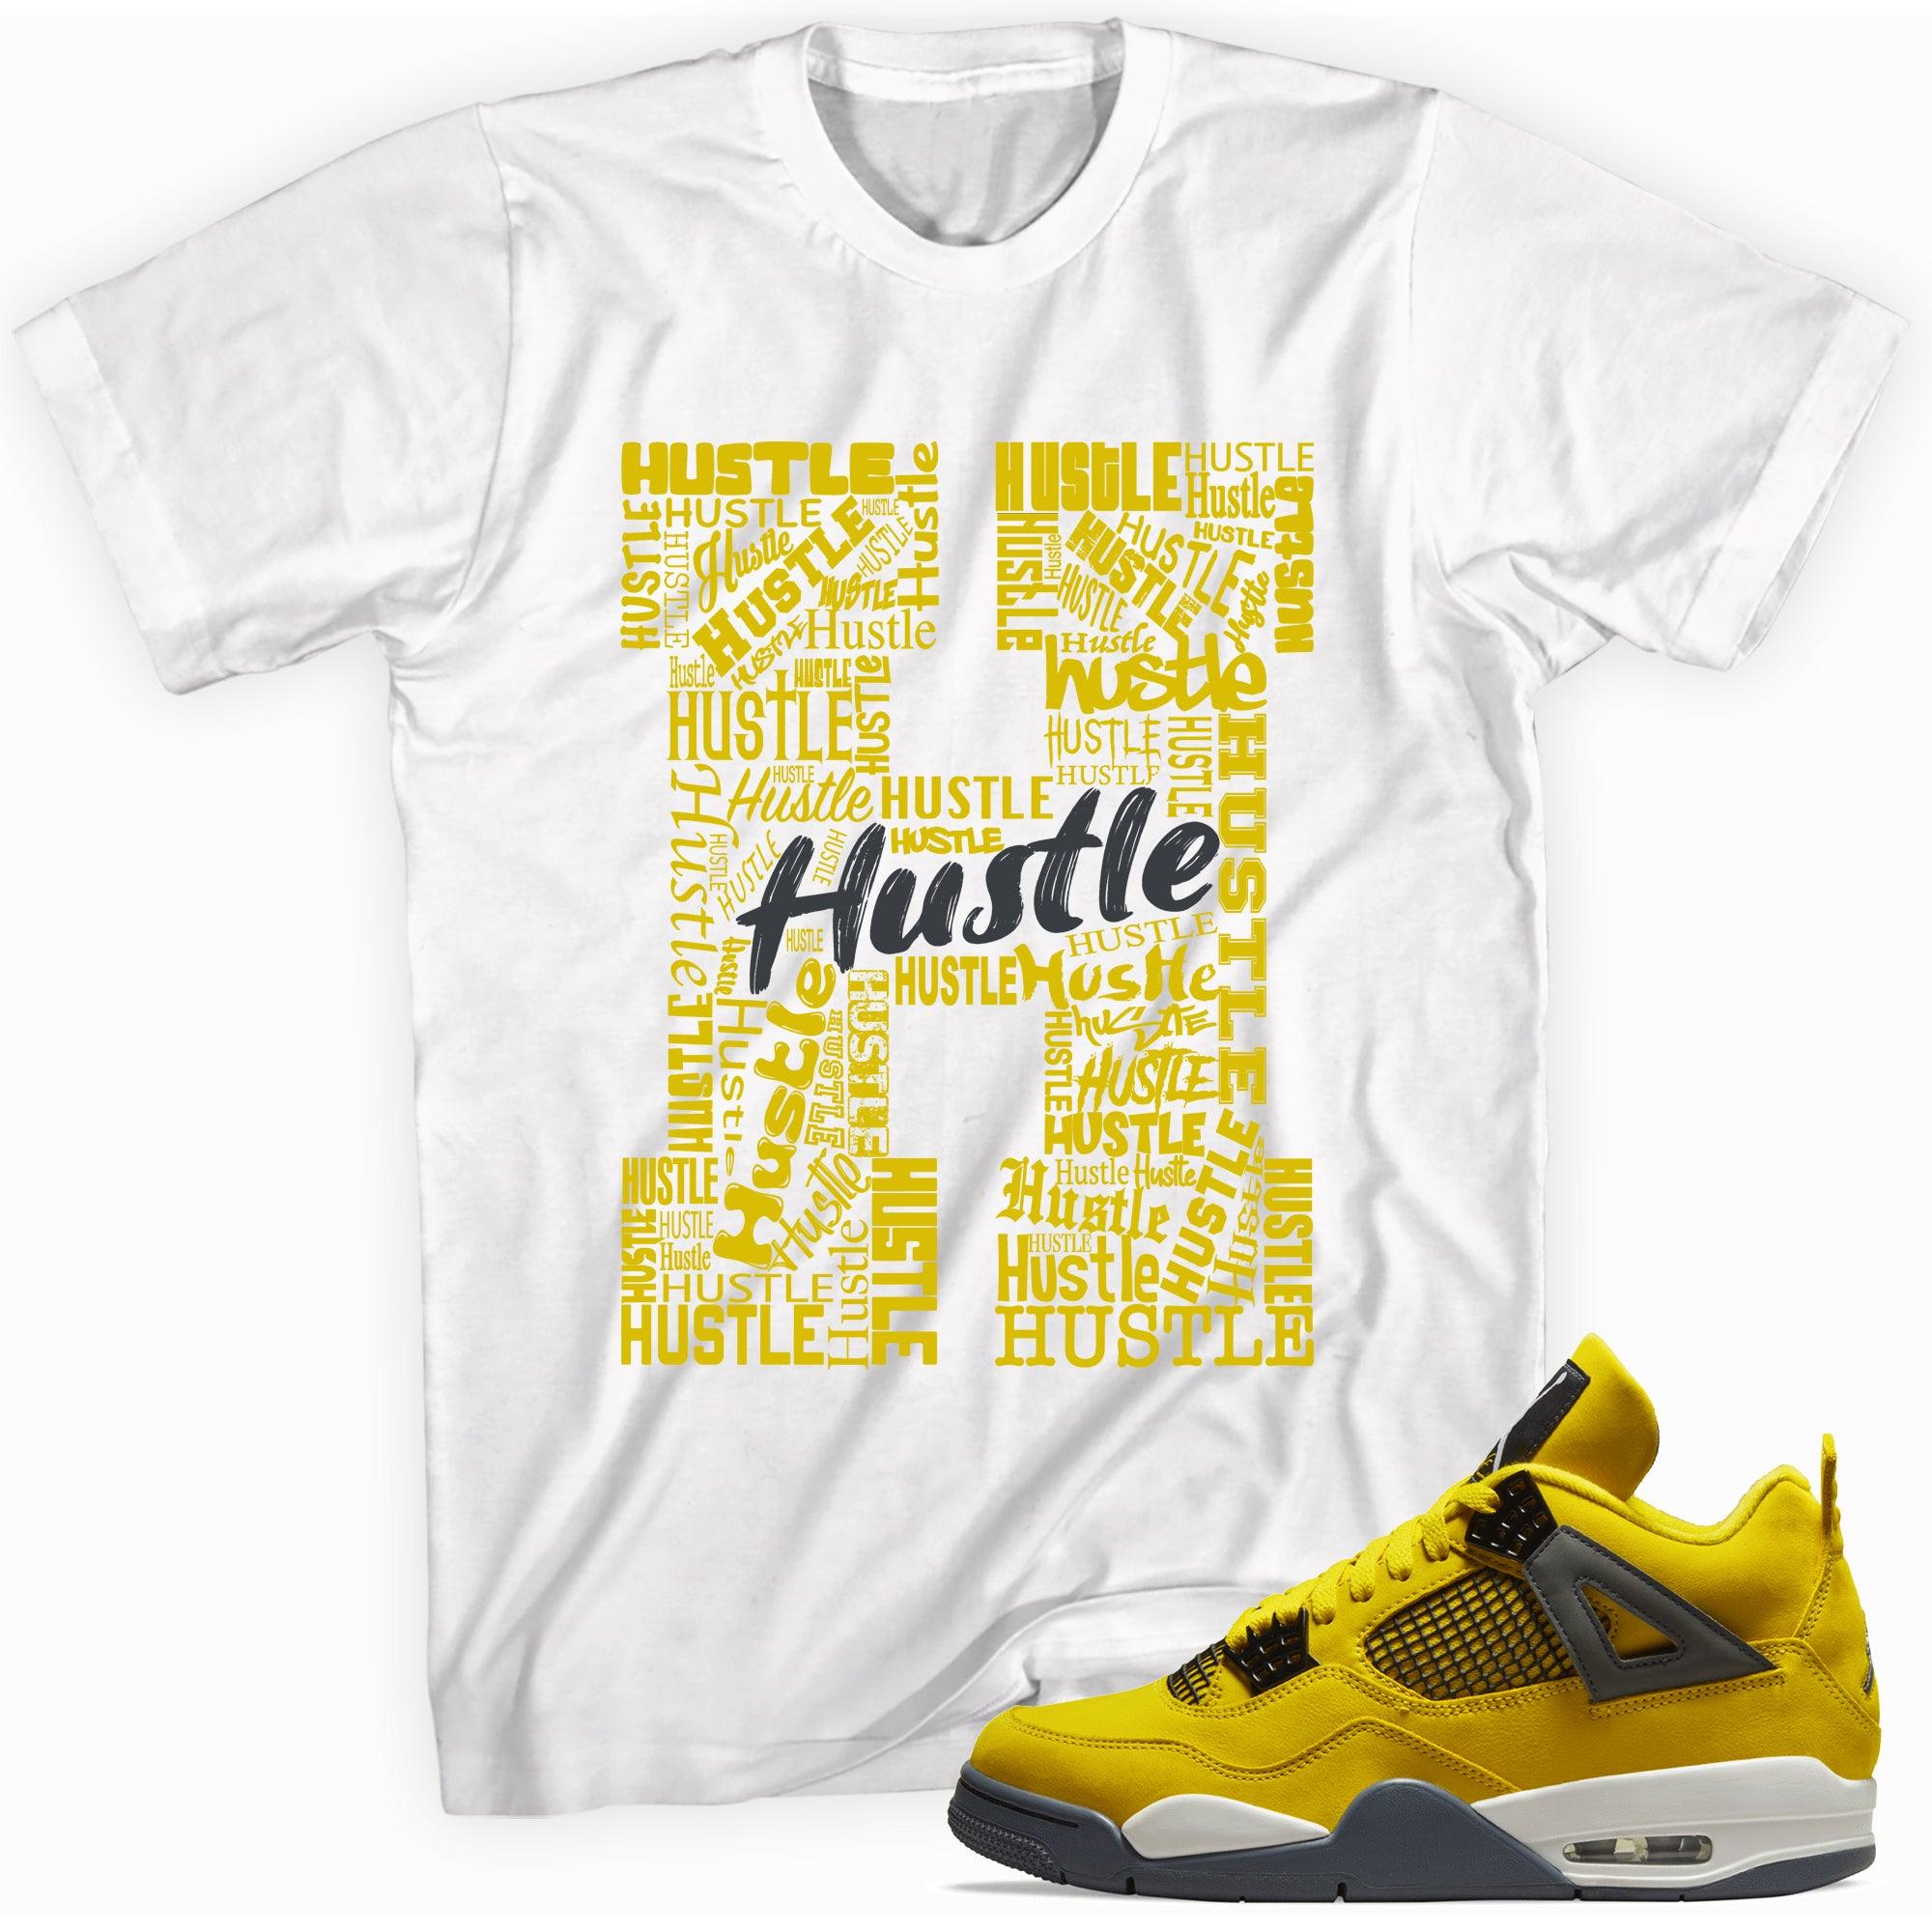 H Is For Hustle Shirt Jordan 4s Retro Lightning photo